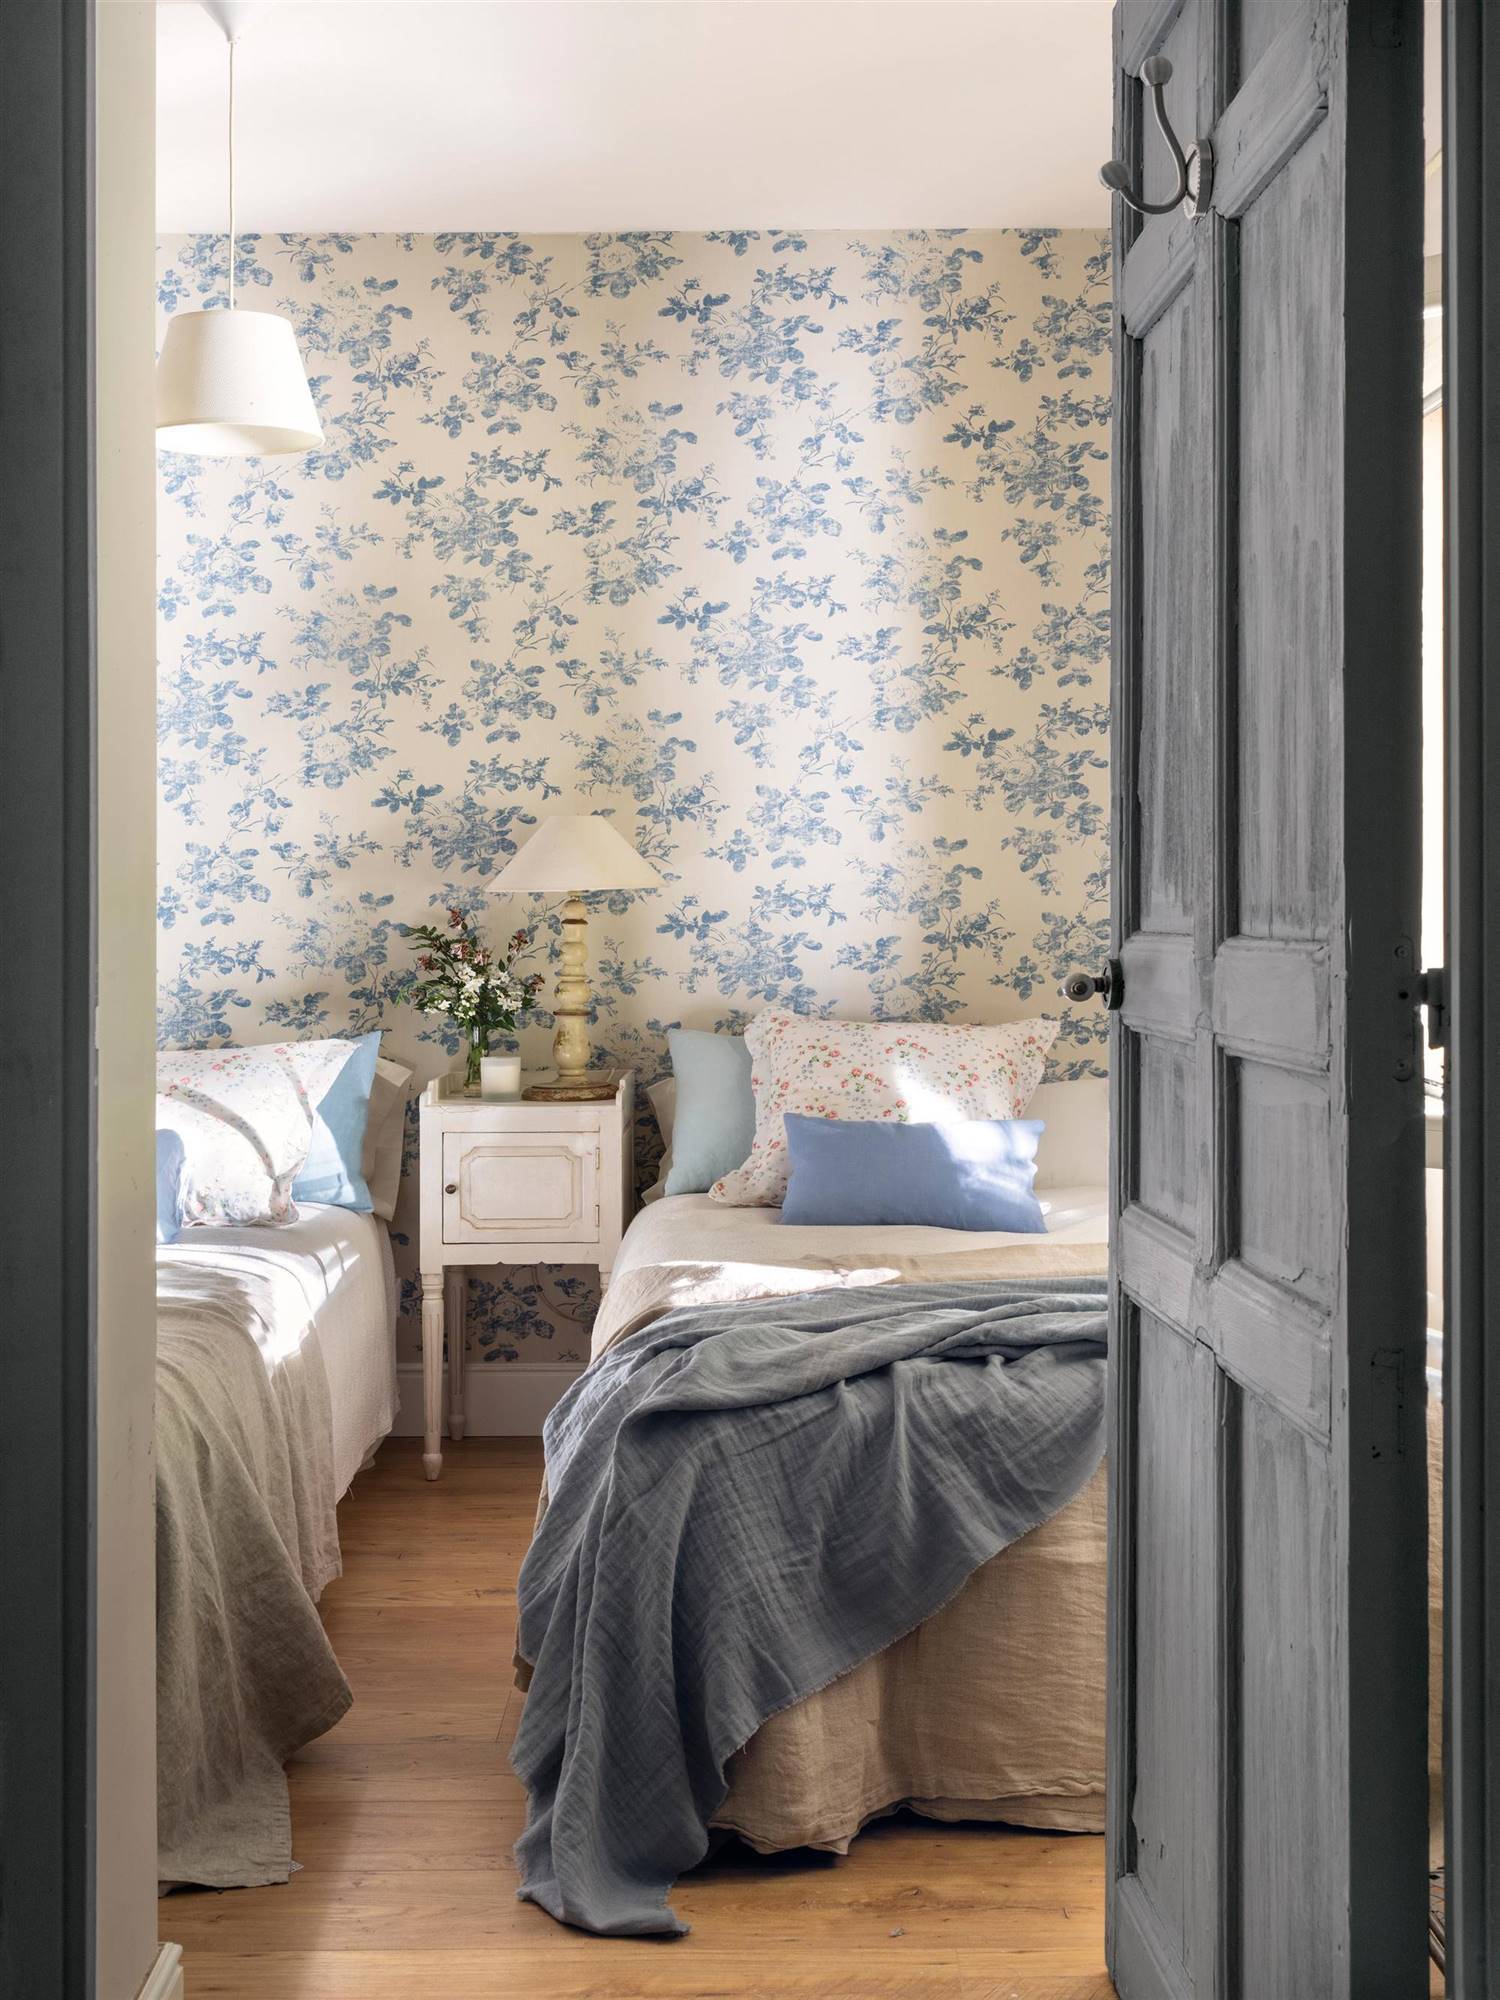 Dormitorio con dos camas de estilo provenzal con papel pintado con motivos florales en color azul 00527797